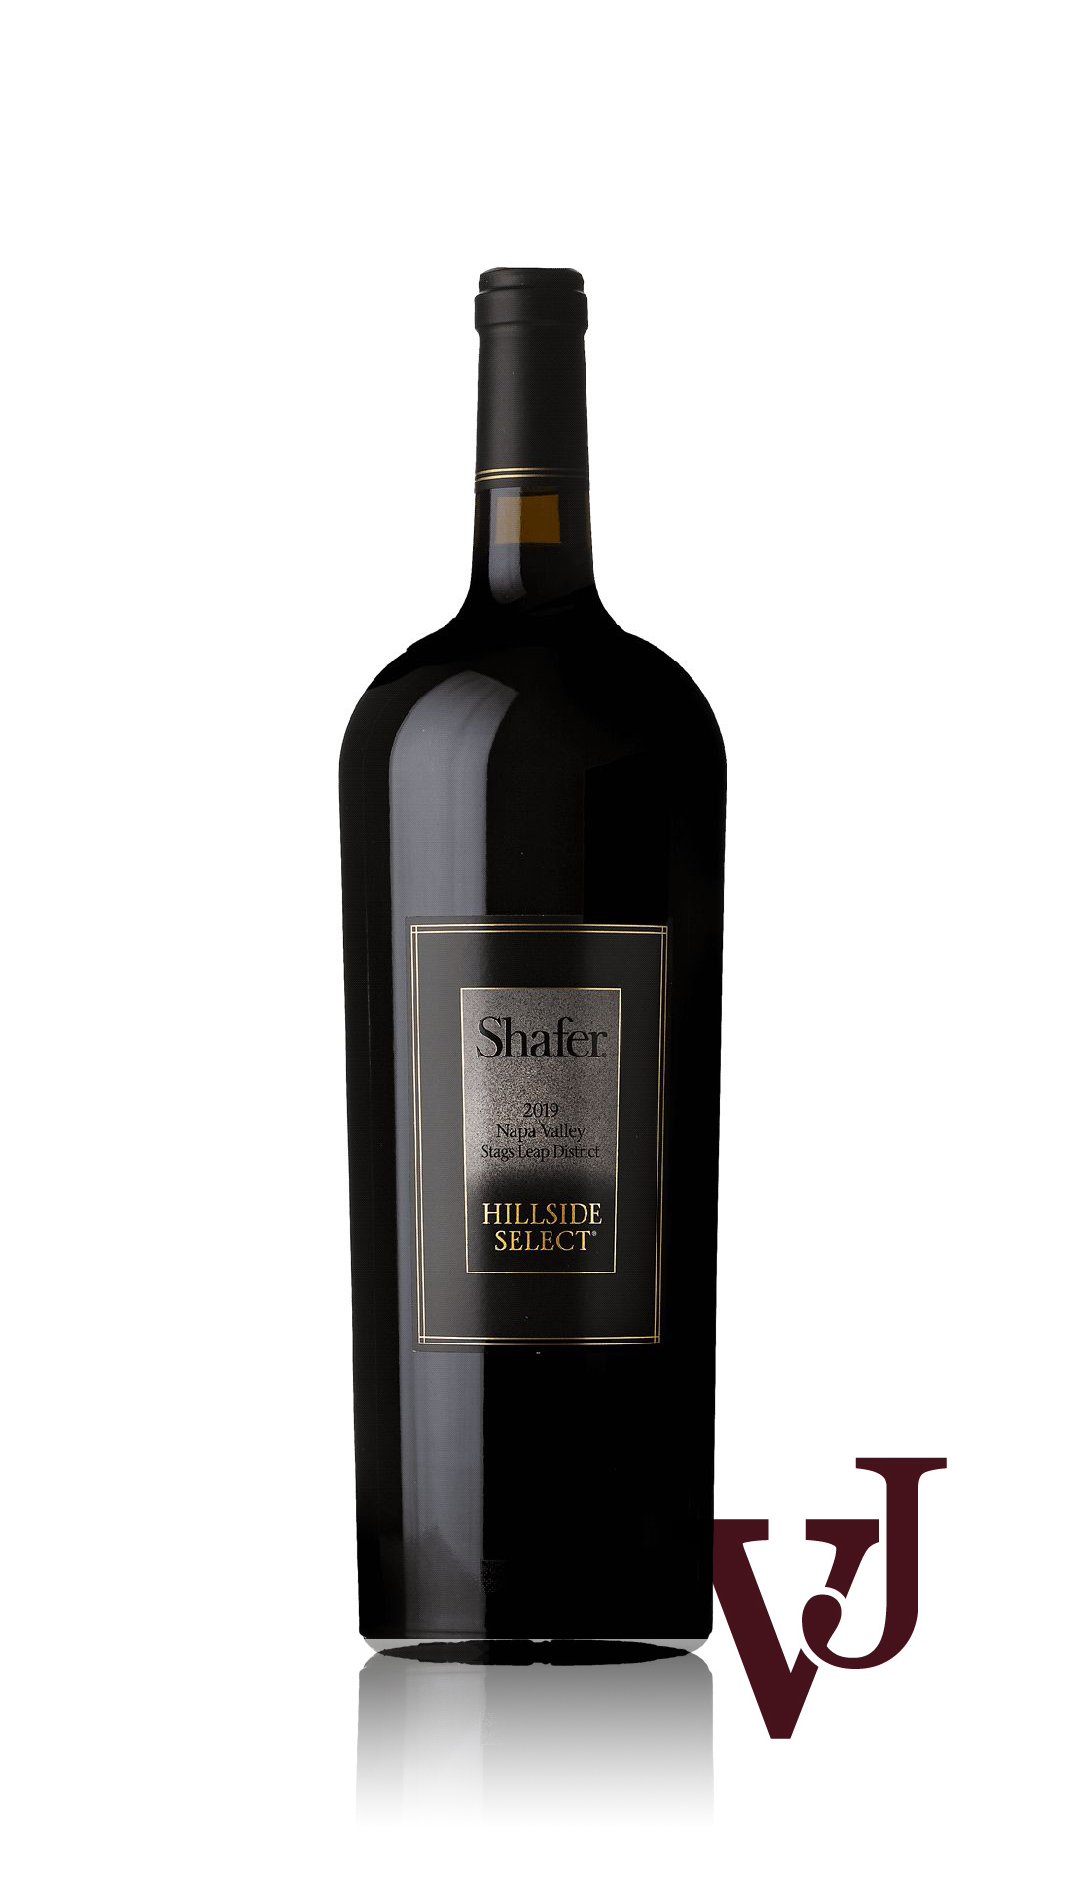 Rött Vin - Shafer Vineyards Hillside Select 2019 artikel nummer 9444406 från producenten Shafer Vineyards från området USA